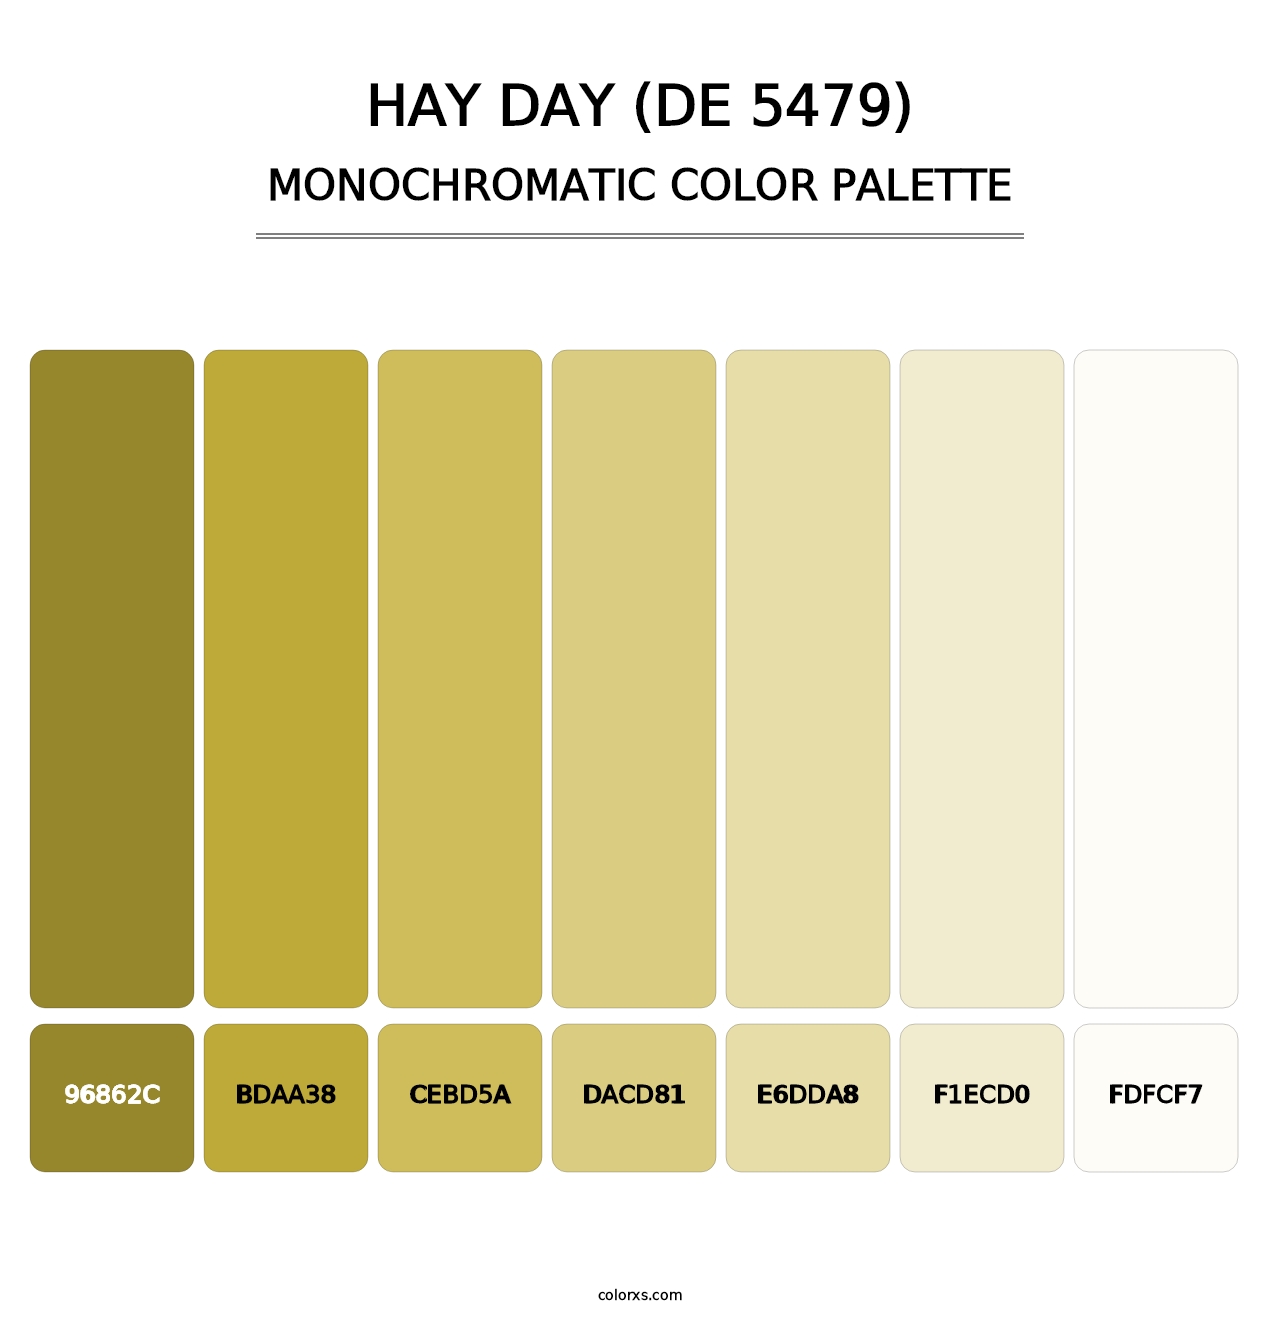 Hay Day (DE 5479) - Monochromatic Color Palette